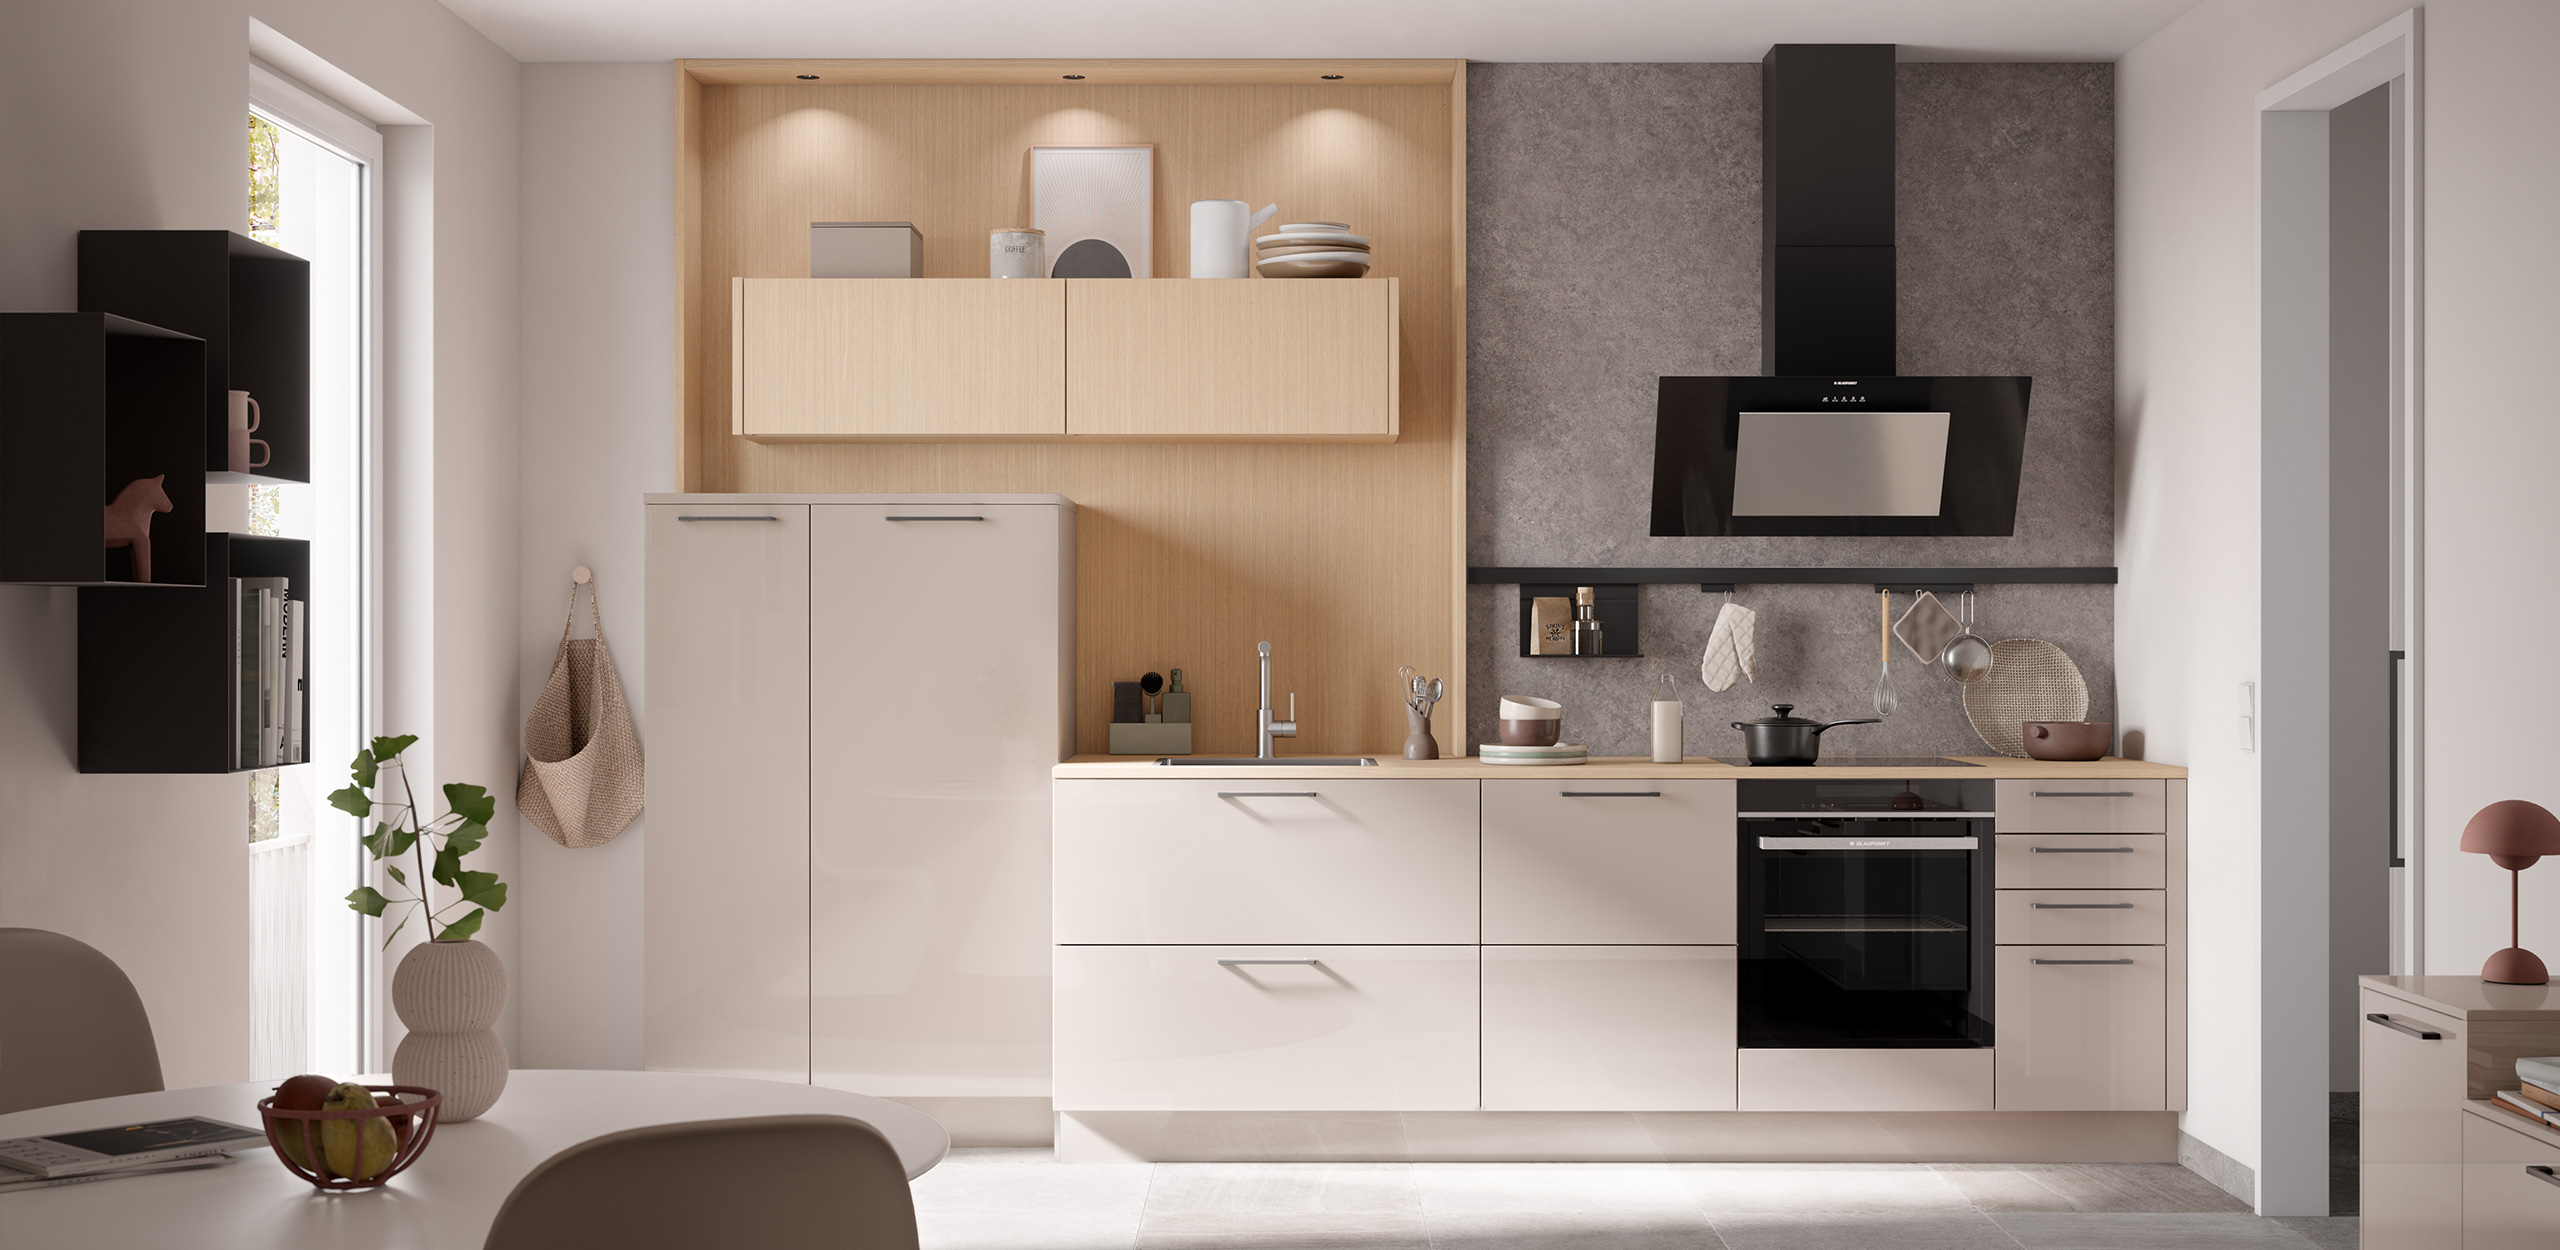 Bild der concept130 TOP BRILLANT Kaschmir MONTREAL Feineiche-natur mit küchenzeile, Midischrank, Oberschränken, Regalen und Tisch mit Sitzgruppe